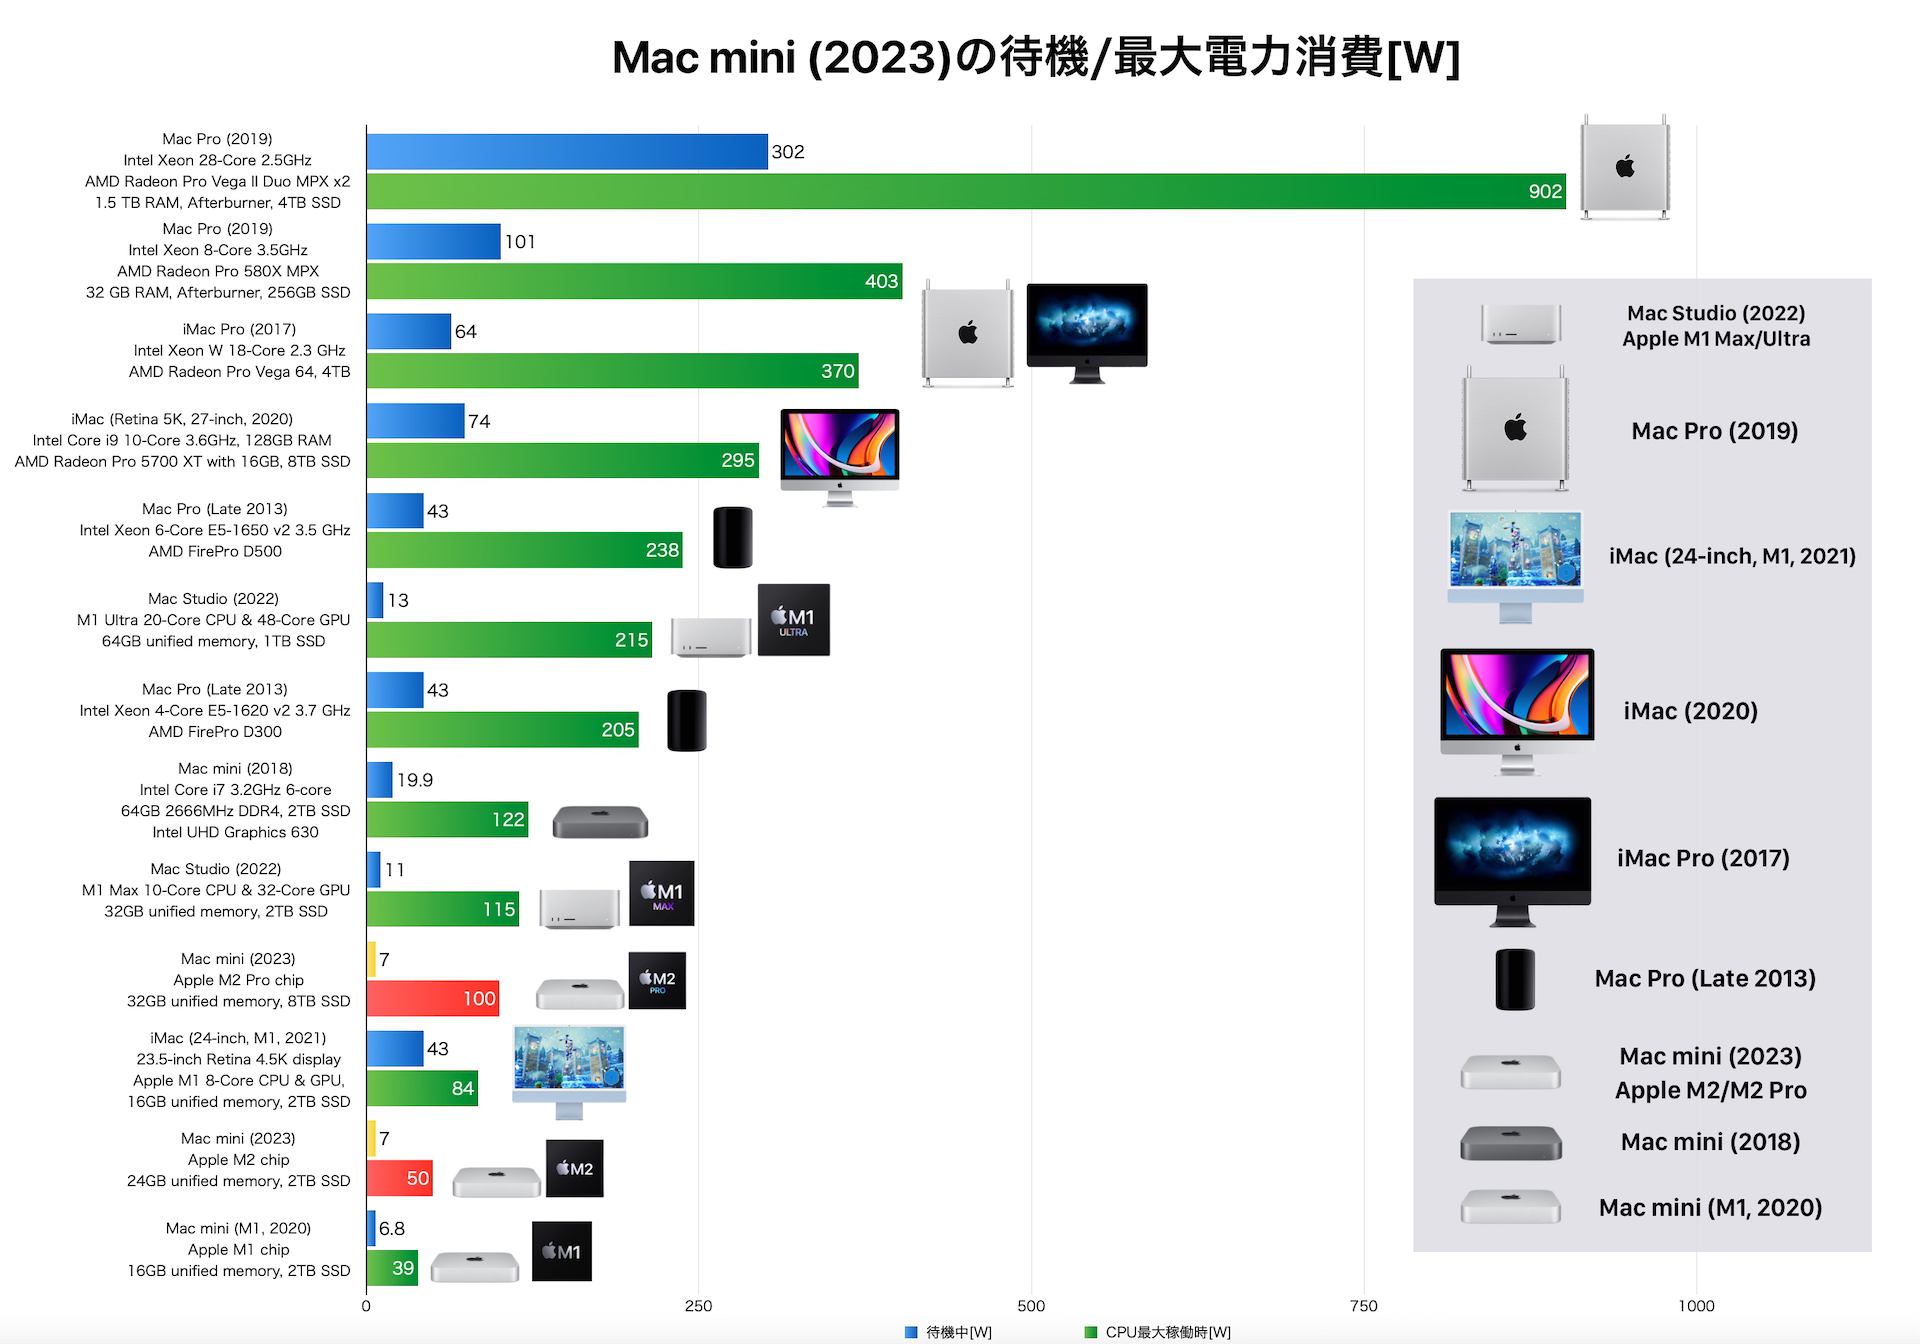 Mac mini (2023)のアイドル状態とプロセッサ最大駆動時の電力